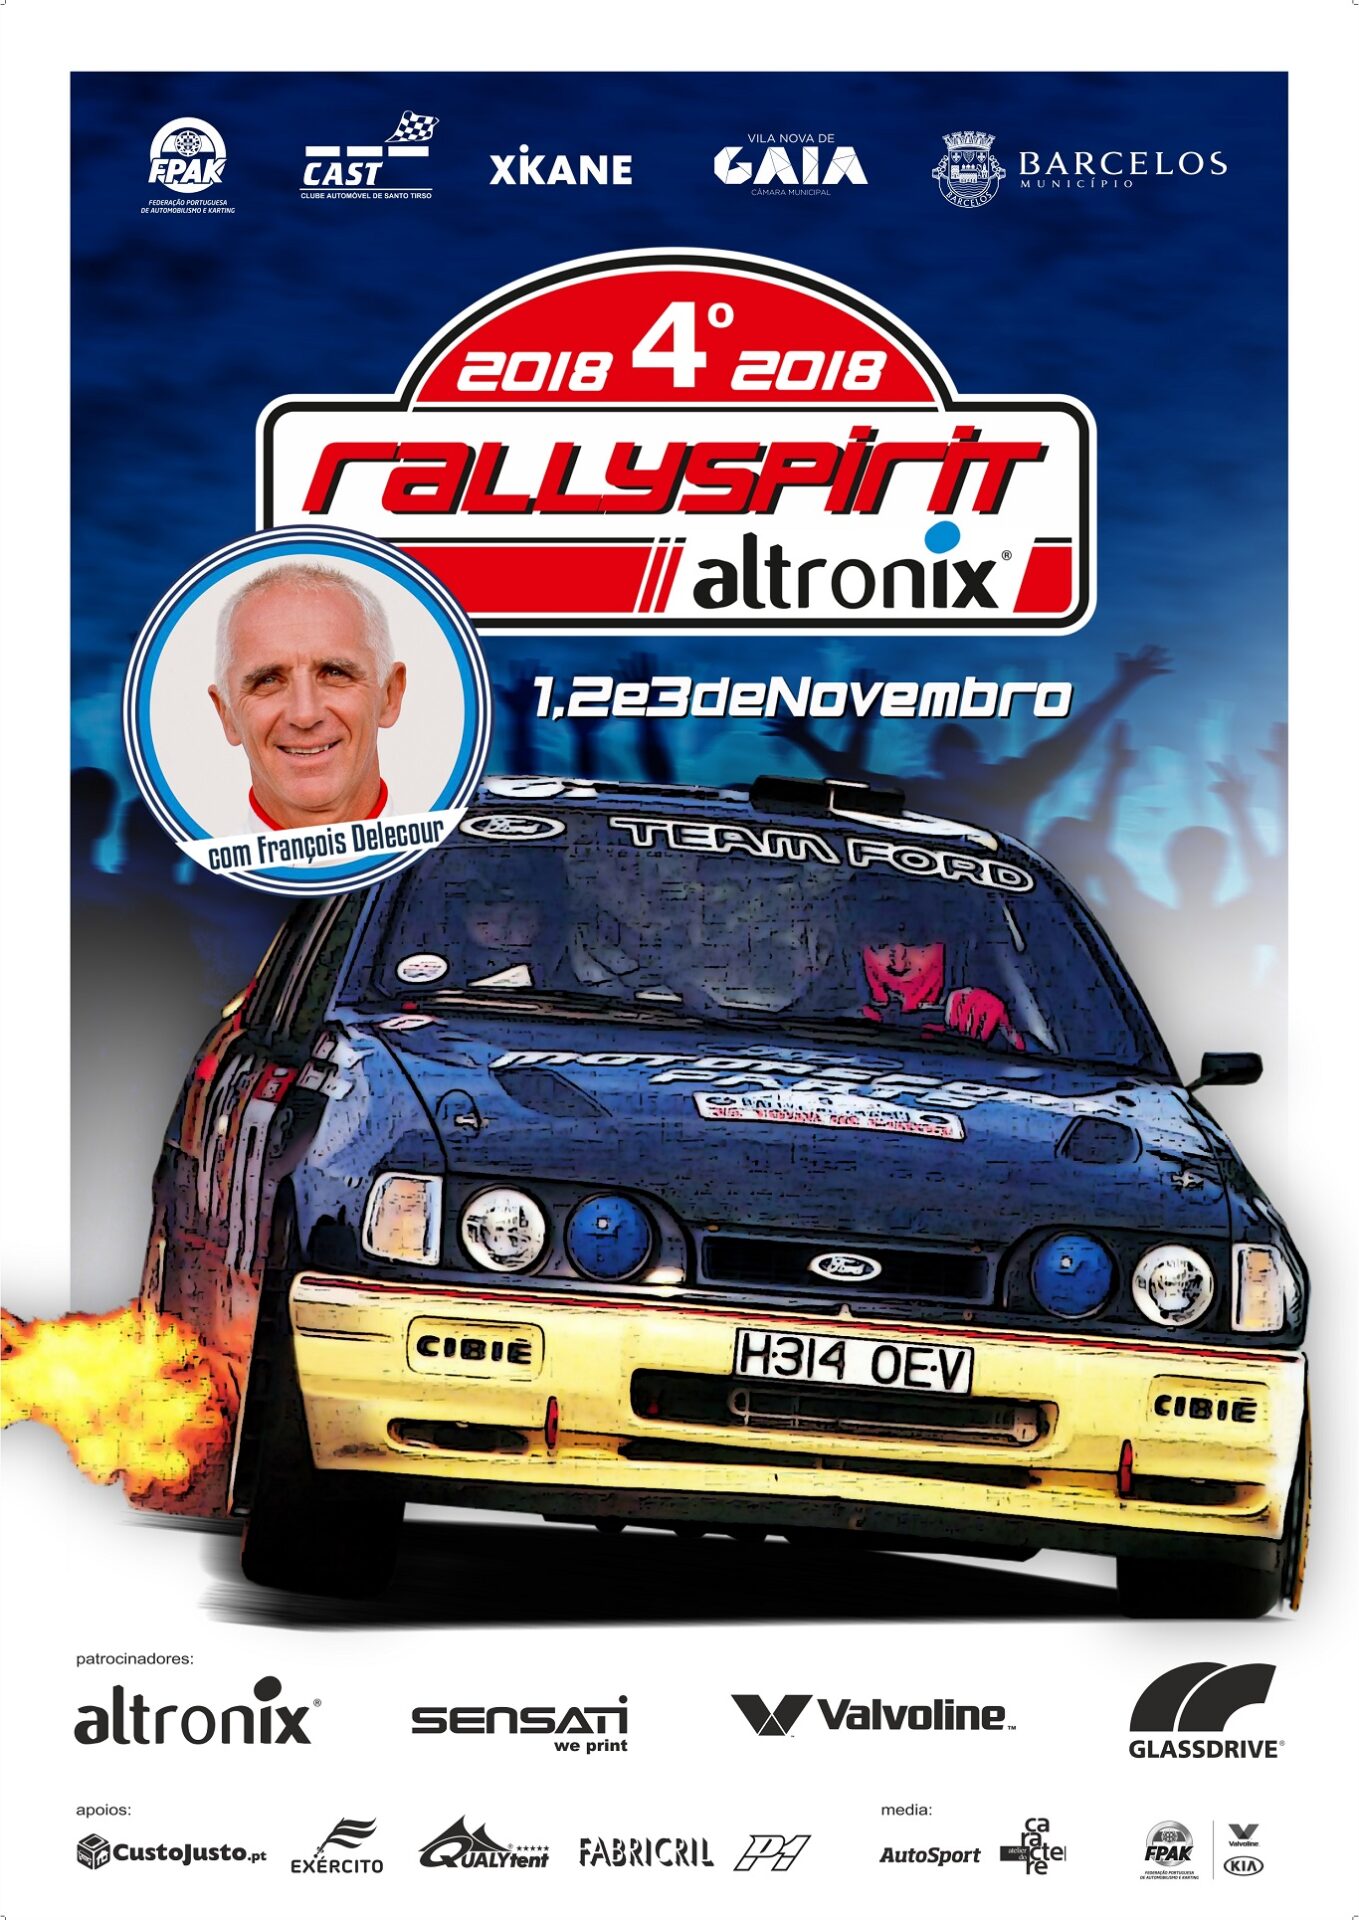 RallySpirit Altronix com uma centena de inscritos  e muitos internacionais!